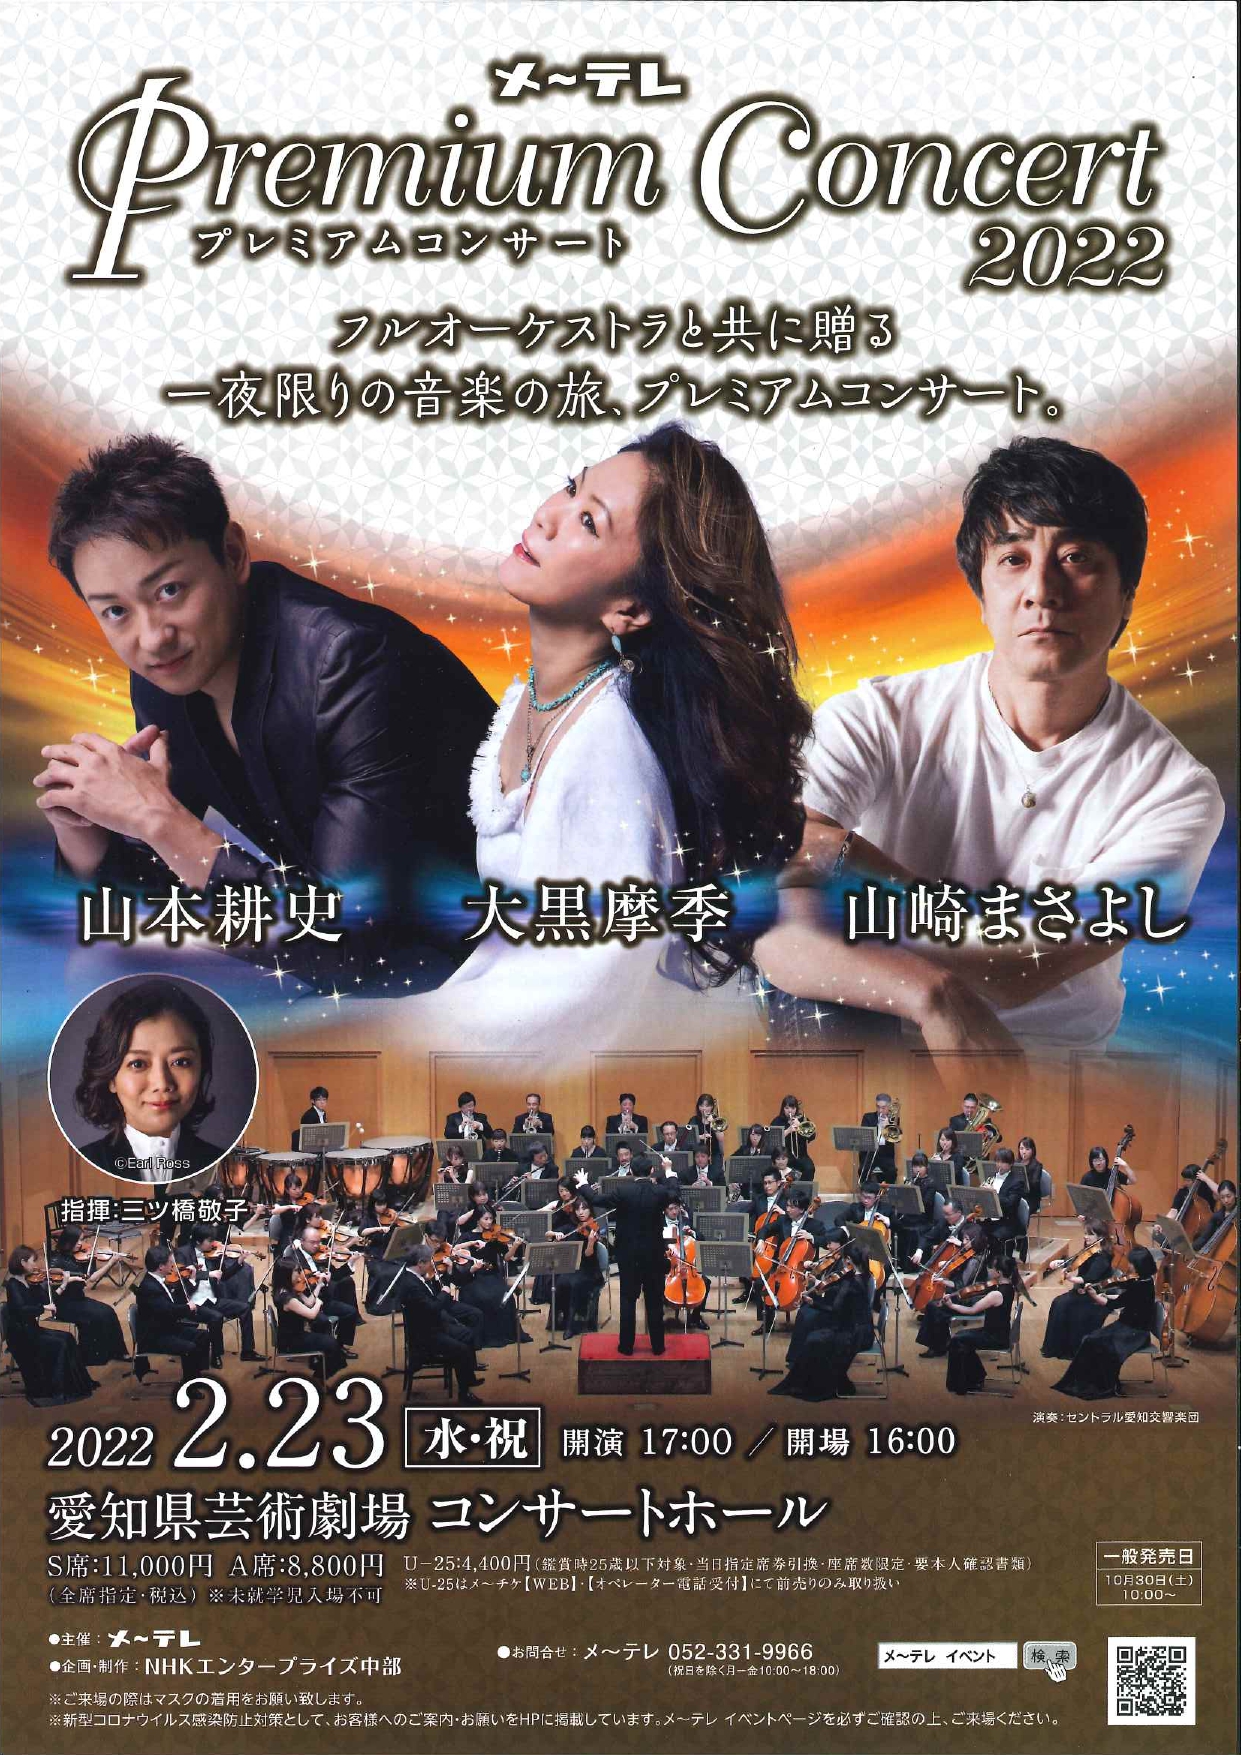 メ～テレ Premium Concert 2022 フルオーケストラと共に贈る一夜限りの音楽の旅、プレミアムコンサート